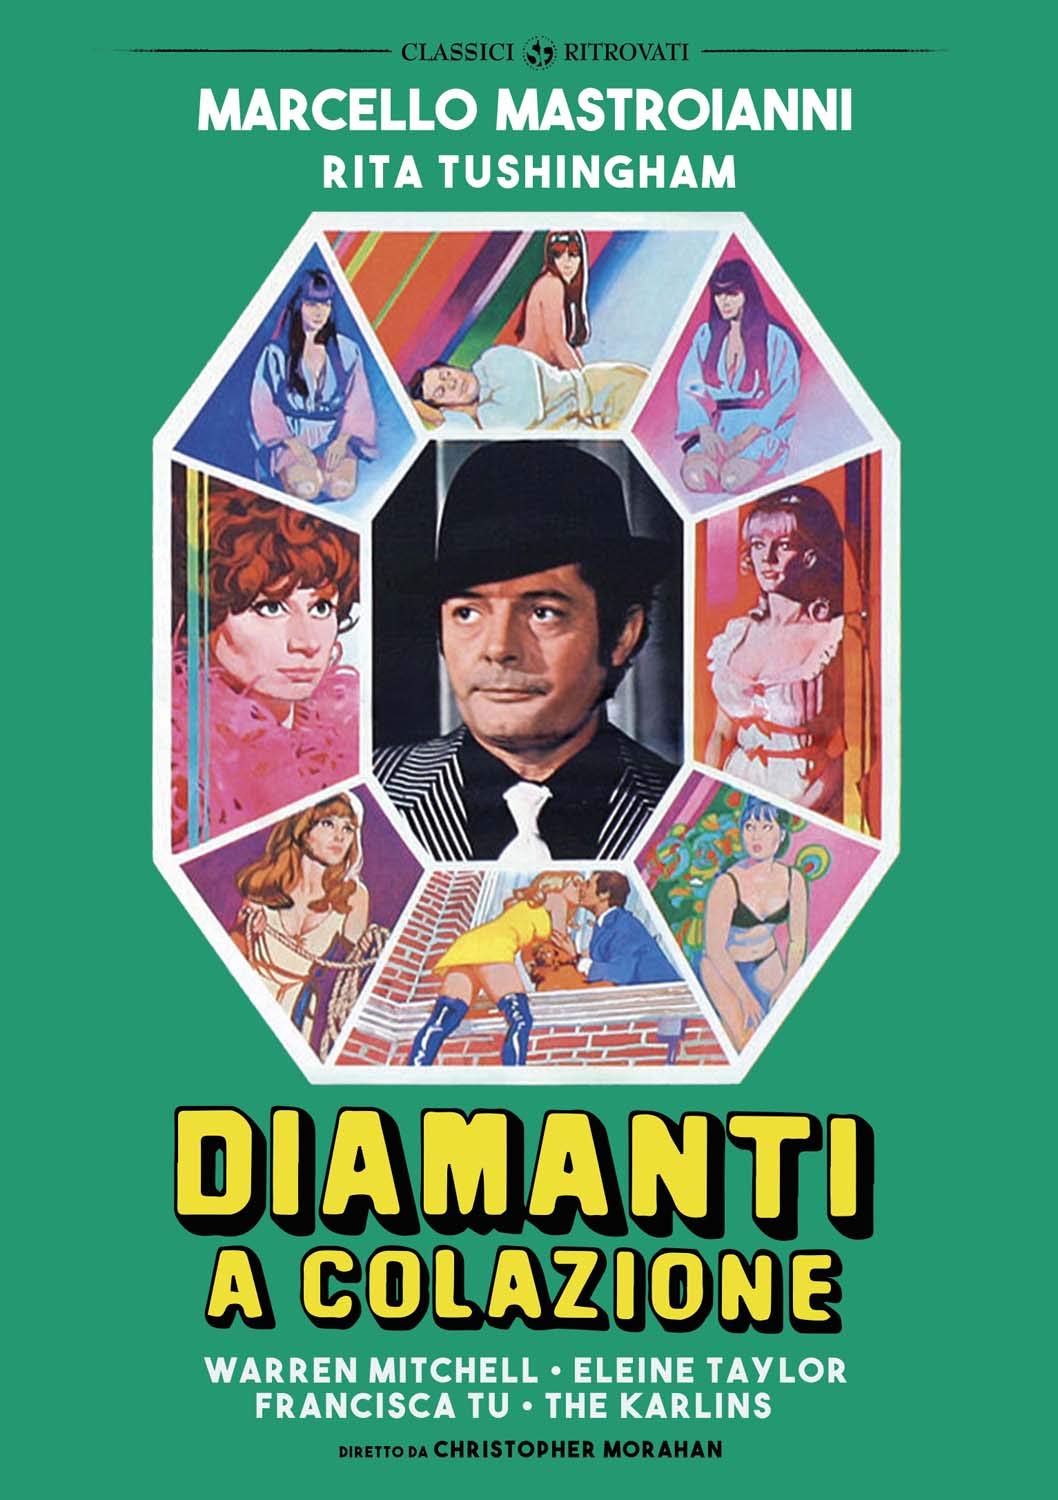 Diamanti a colazione [HD] (1968)